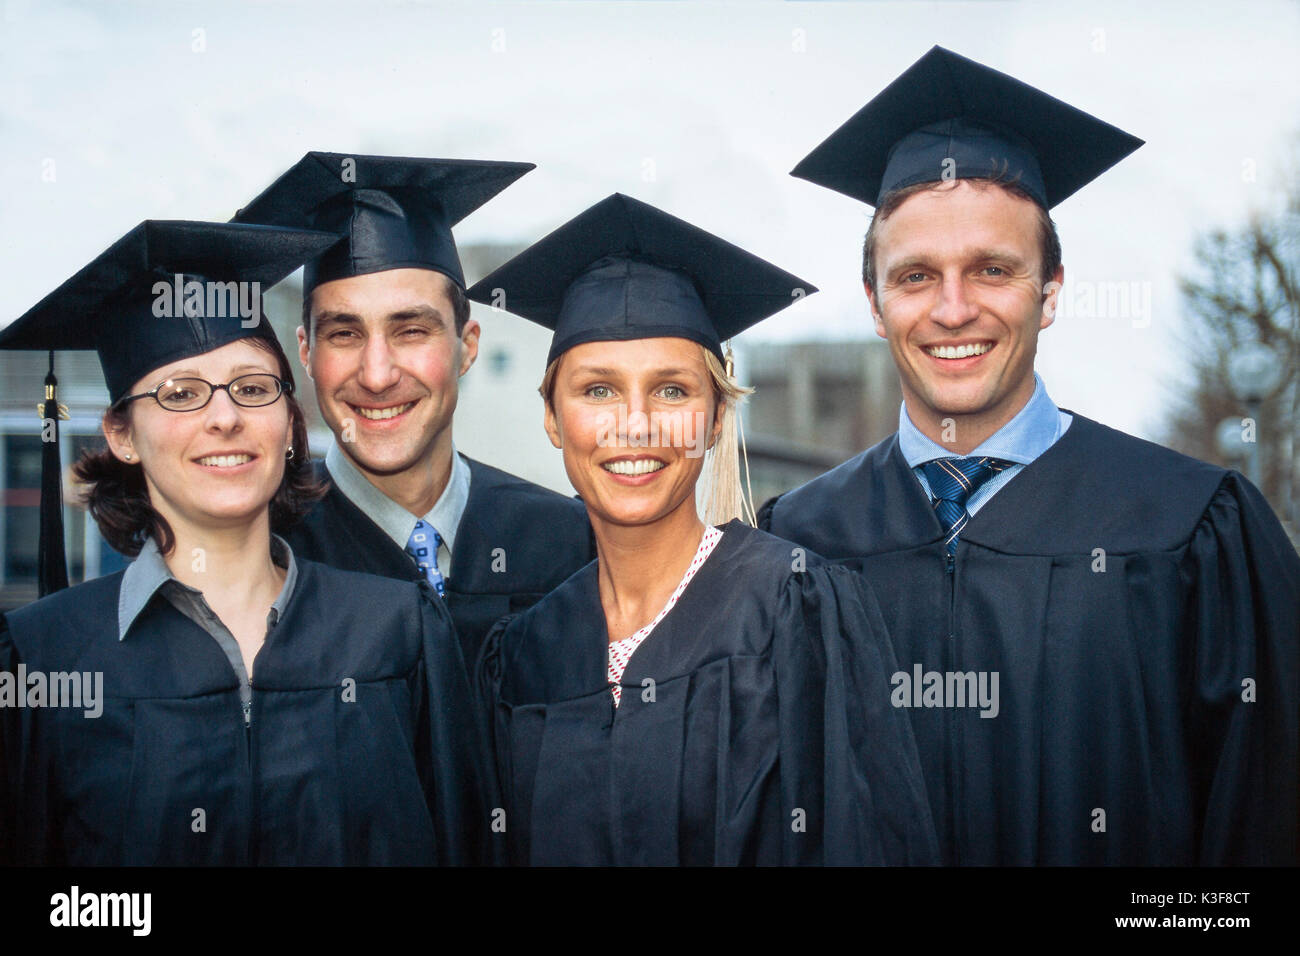 University graduates with doctoral caps Stock Photo